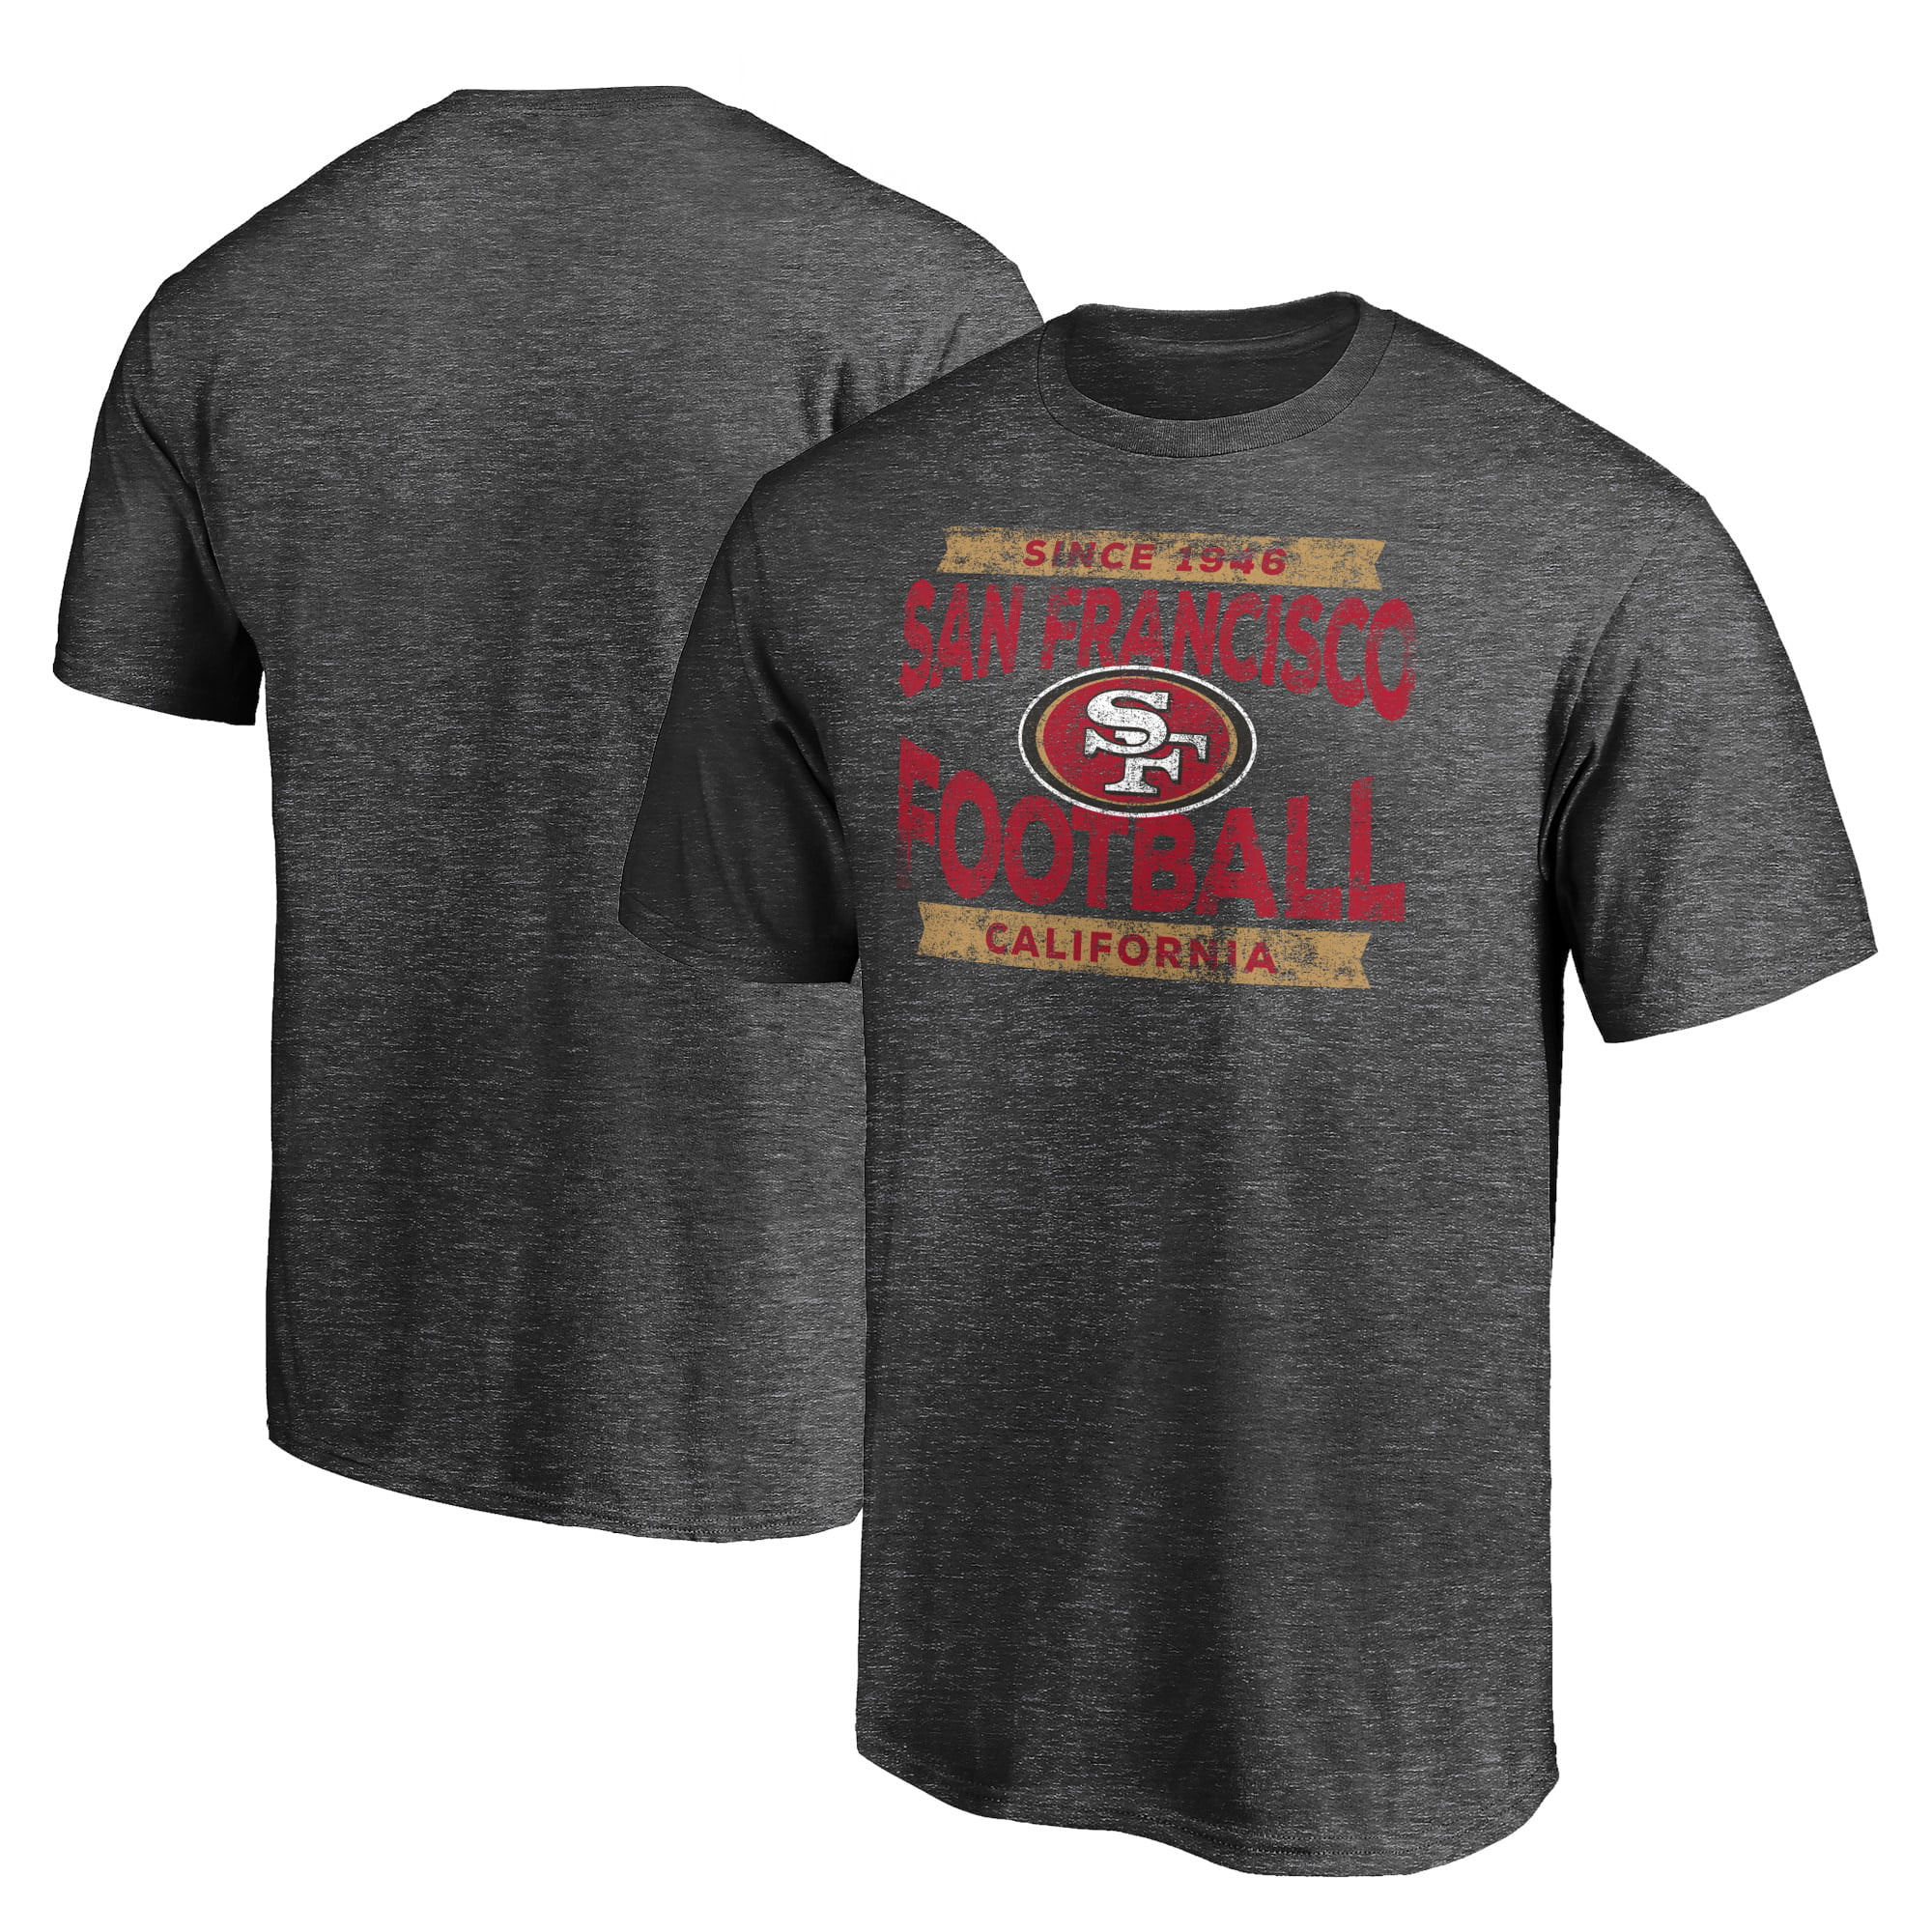 San Francisco 49ers Men's Outdoor T-shirts été décontracté manches courtes Tee Tops 